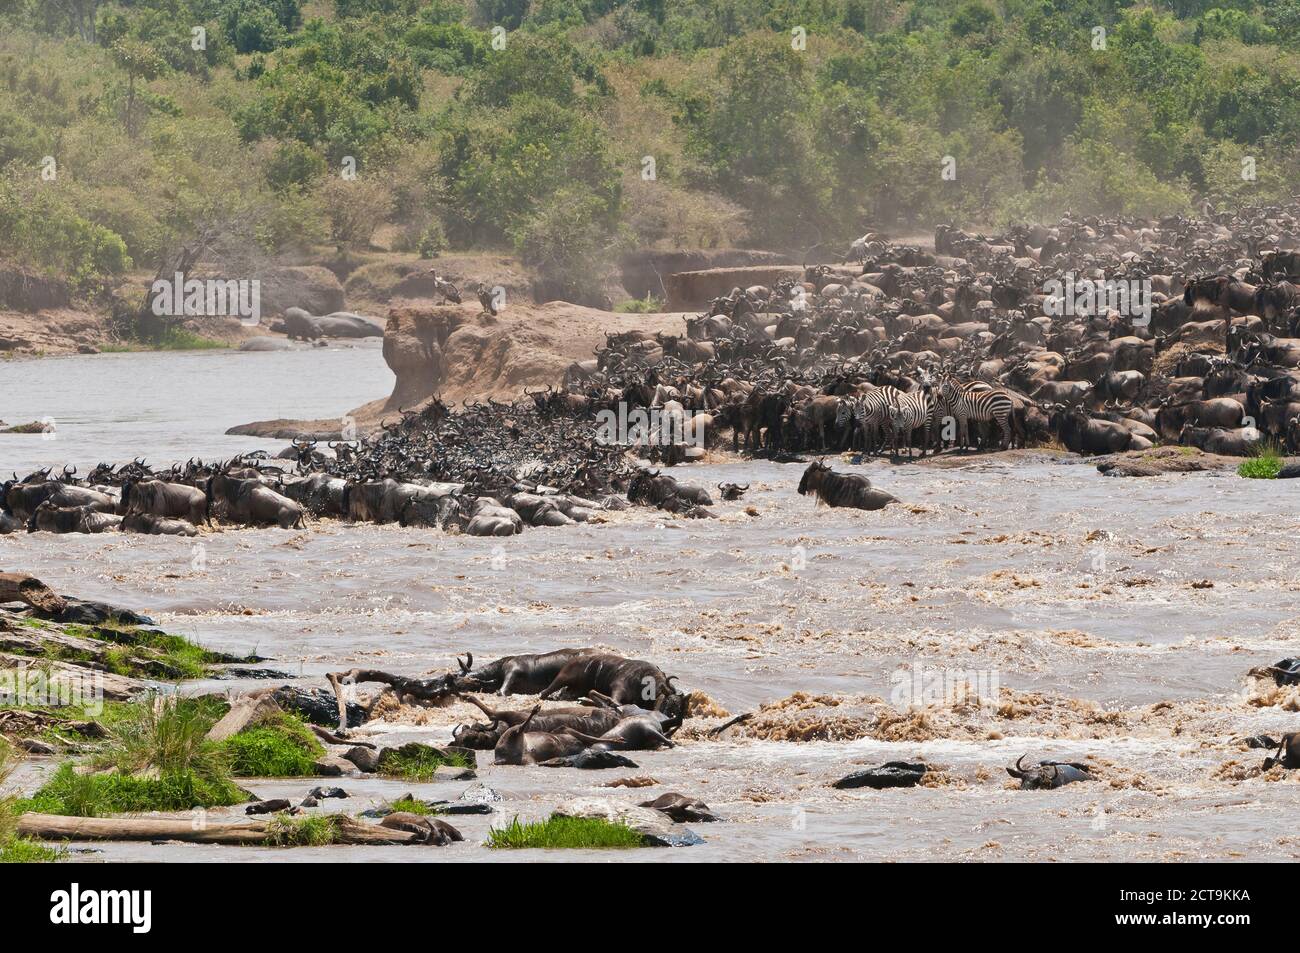 Afrika, Kenia, Maasai Mara National Reserve, Blue or Common Wildebeest (Connochaetes taurinus), während der Migration, Gnus überqueren den Mara River Stockfoto